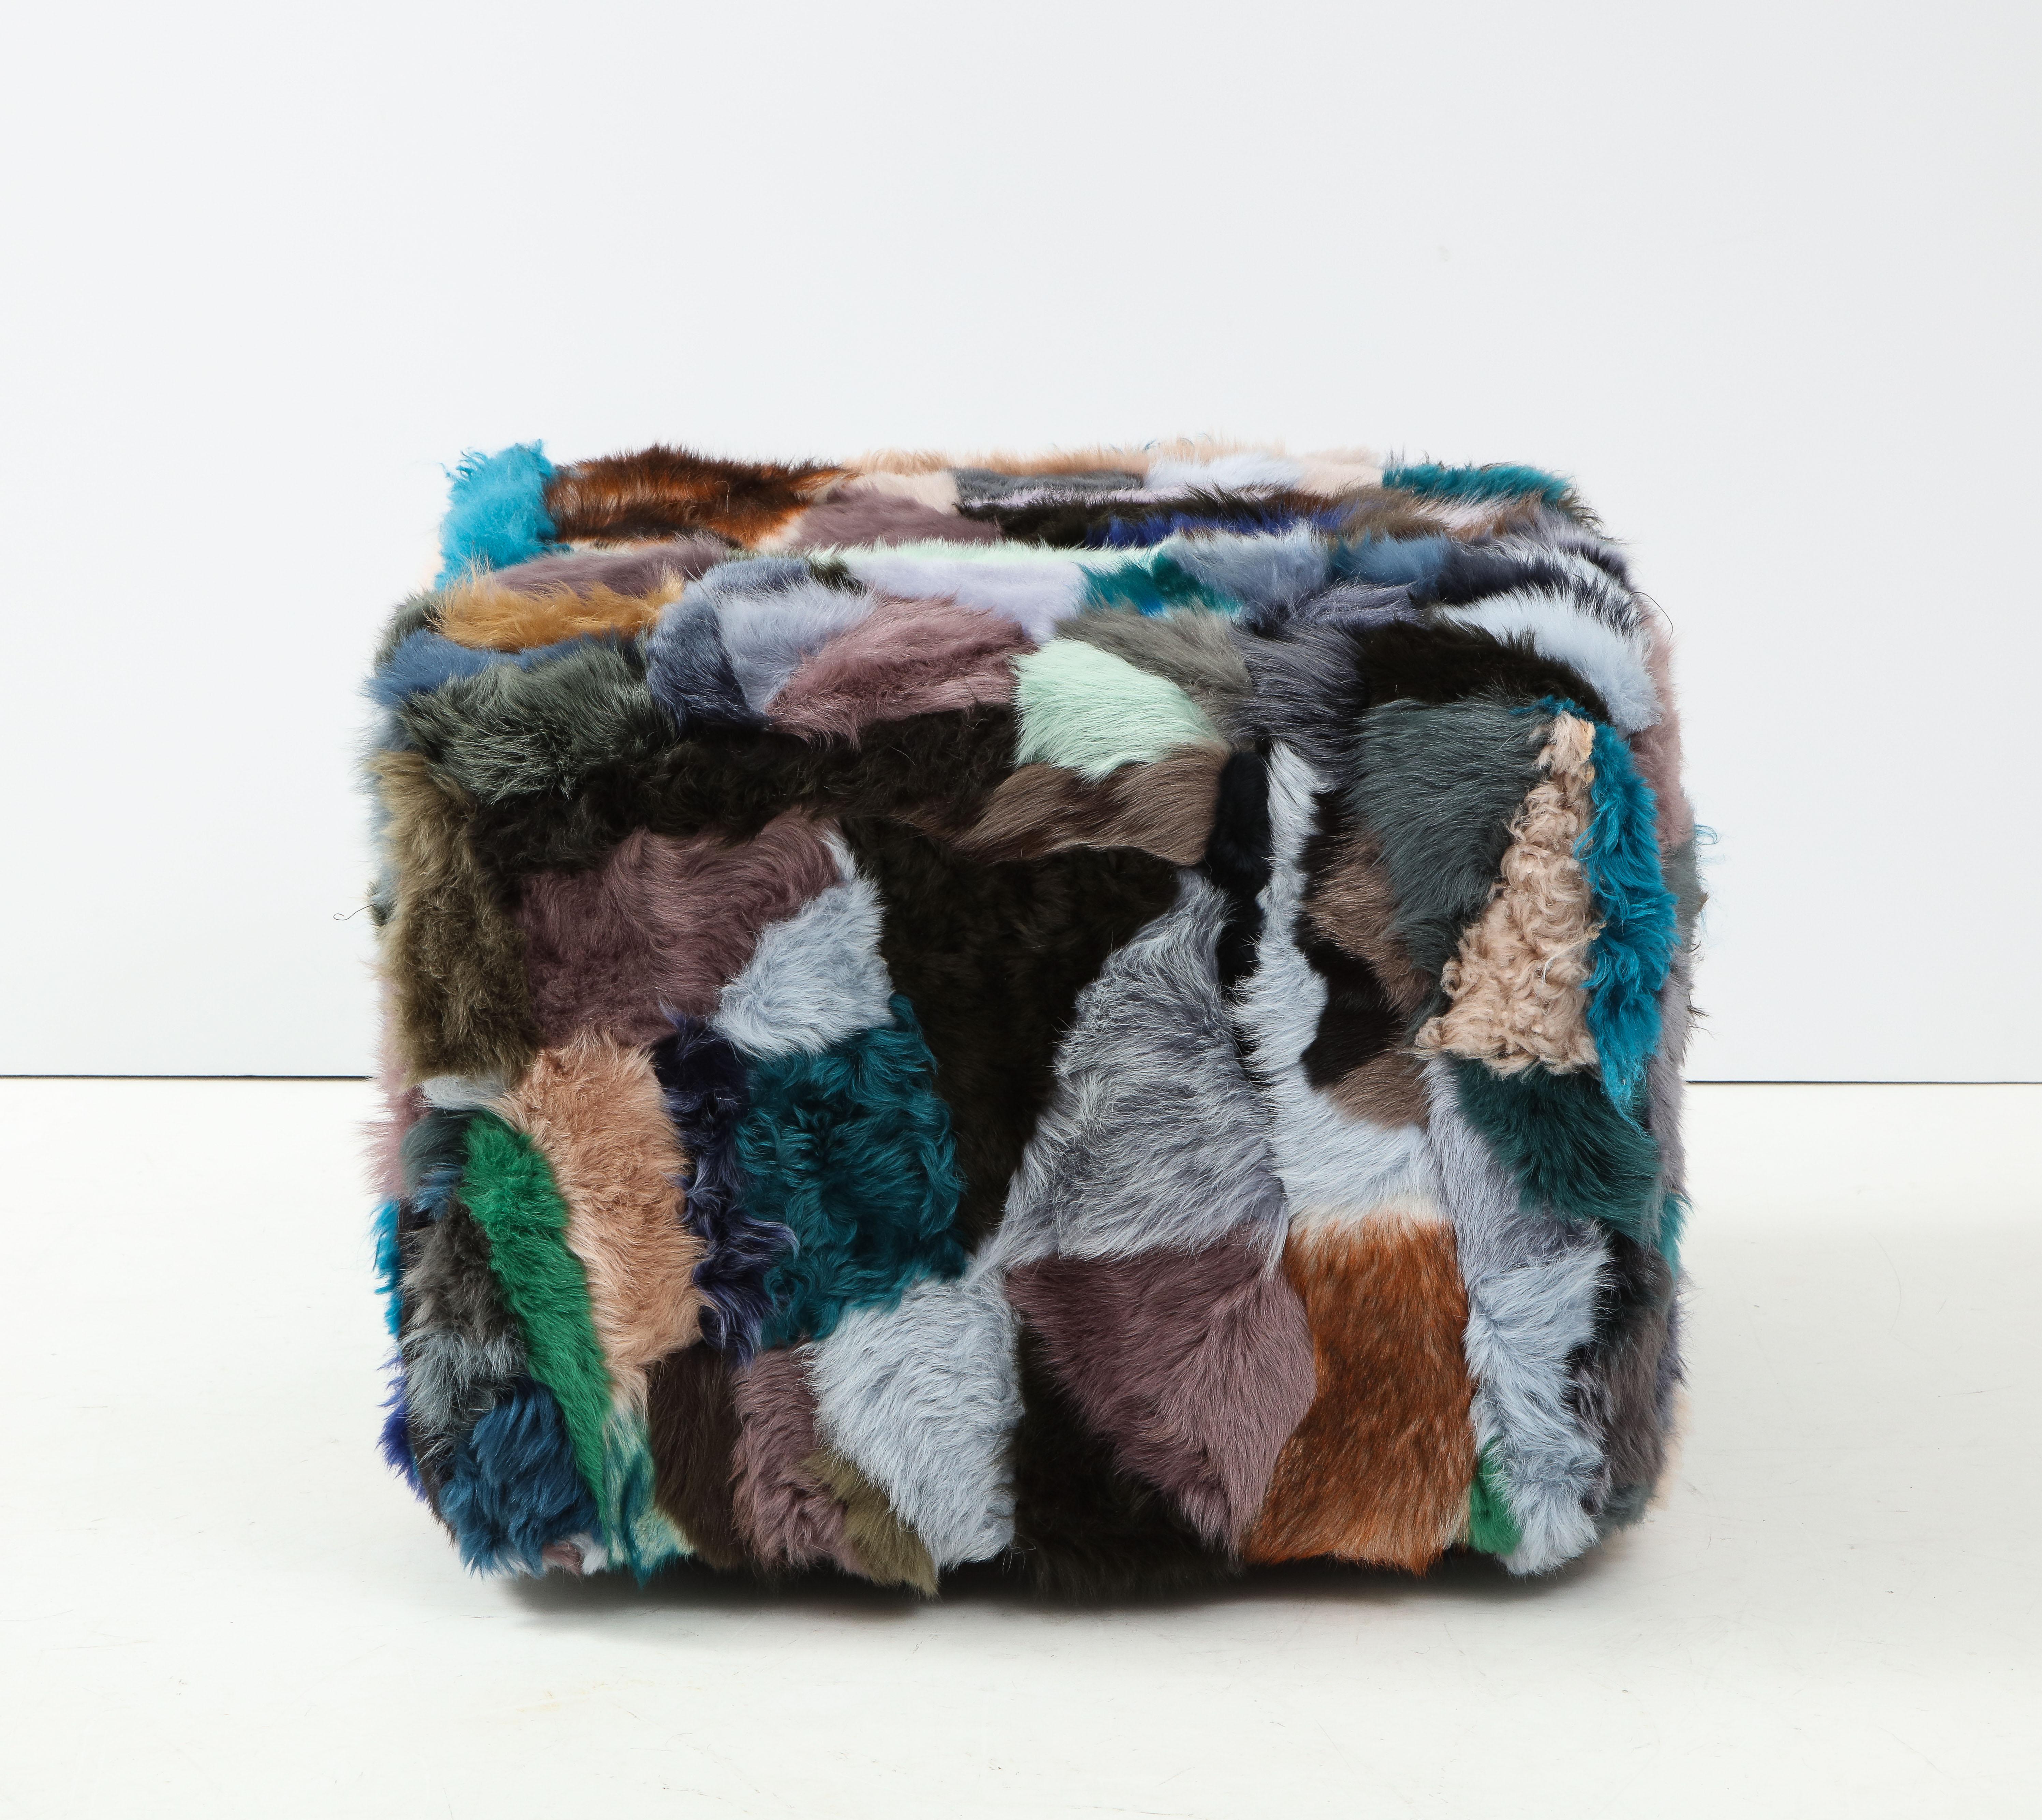 Pouf cube inspiré de Fendi, tapissé de peau de mouton australien en patchwork de différentes couleurs et épaisseurs. L'ottoman repose sur 4 pieds en bois effilés. Un siège confortable dans n'importe quel environnement.